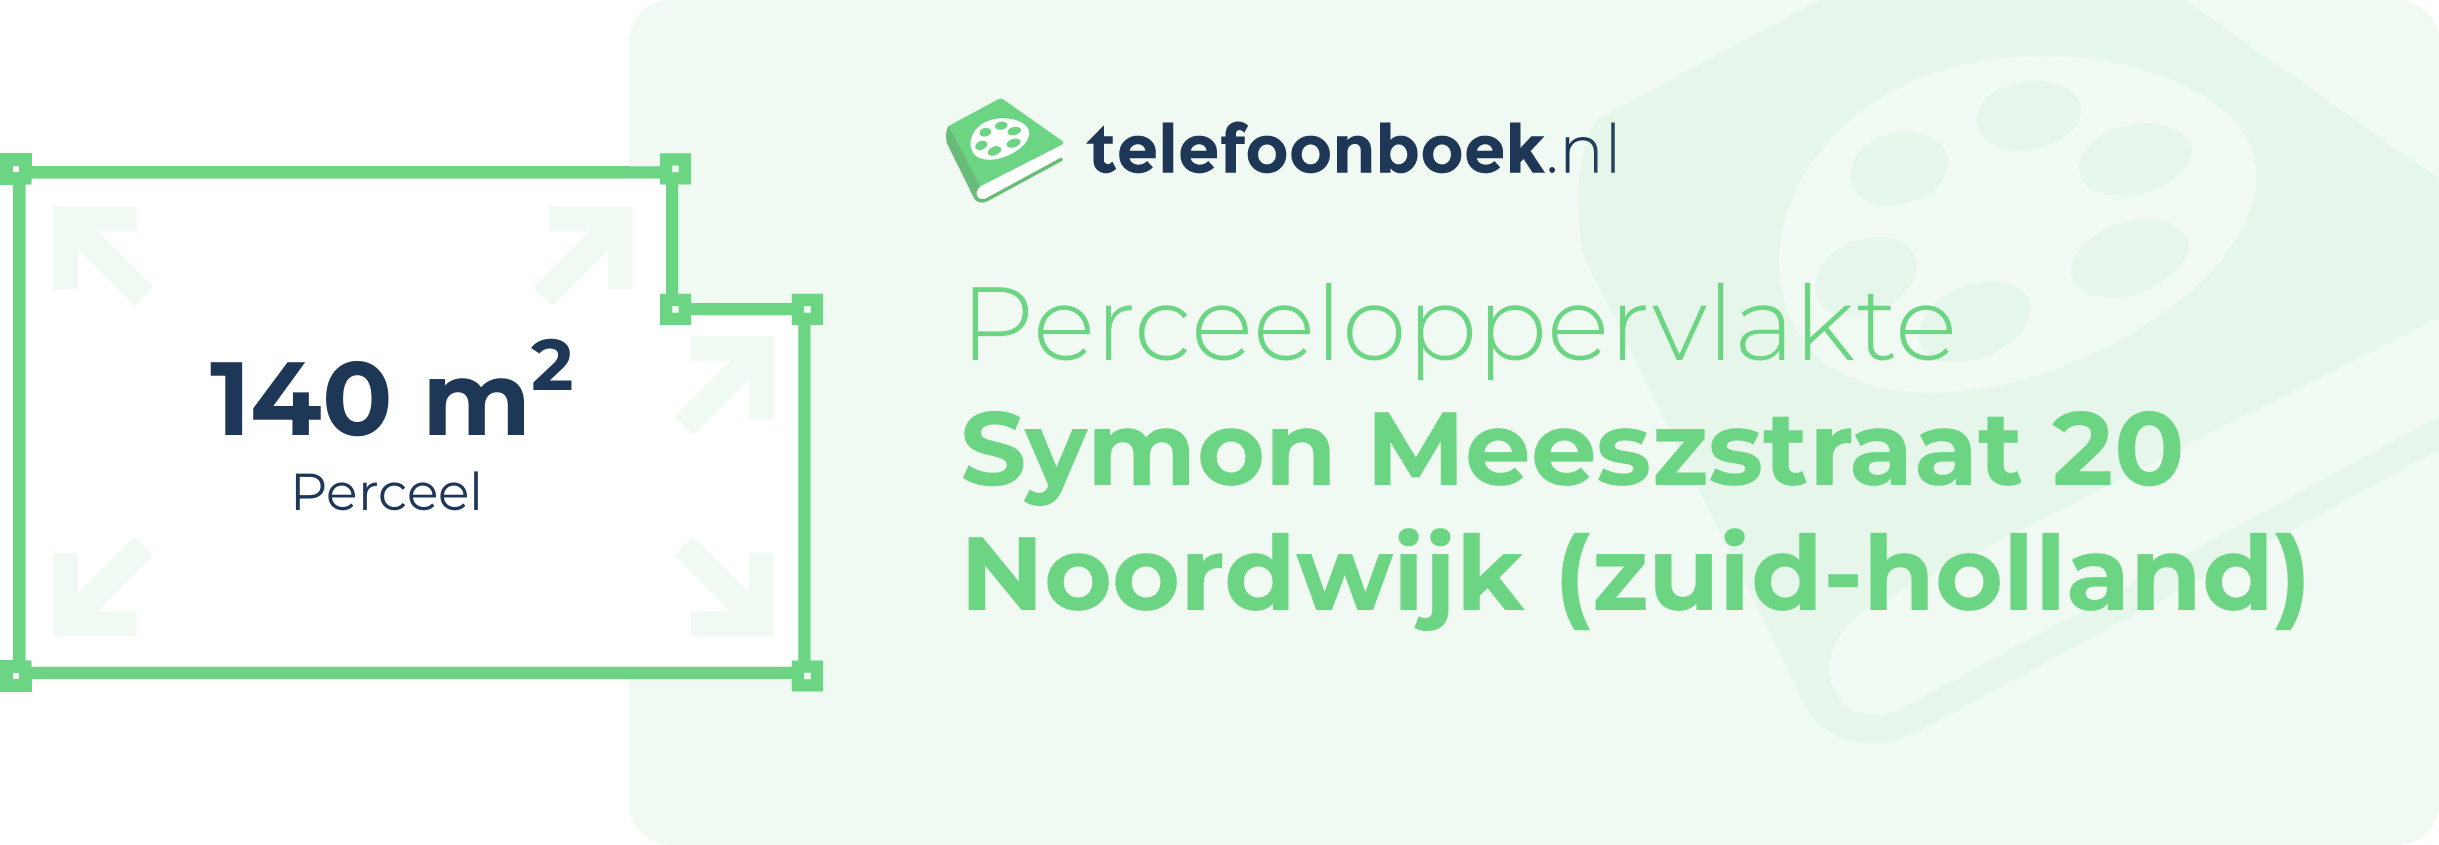 Perceeloppervlakte Symon Meeszstraat 20 Noordwijk (Zuid-Holland)